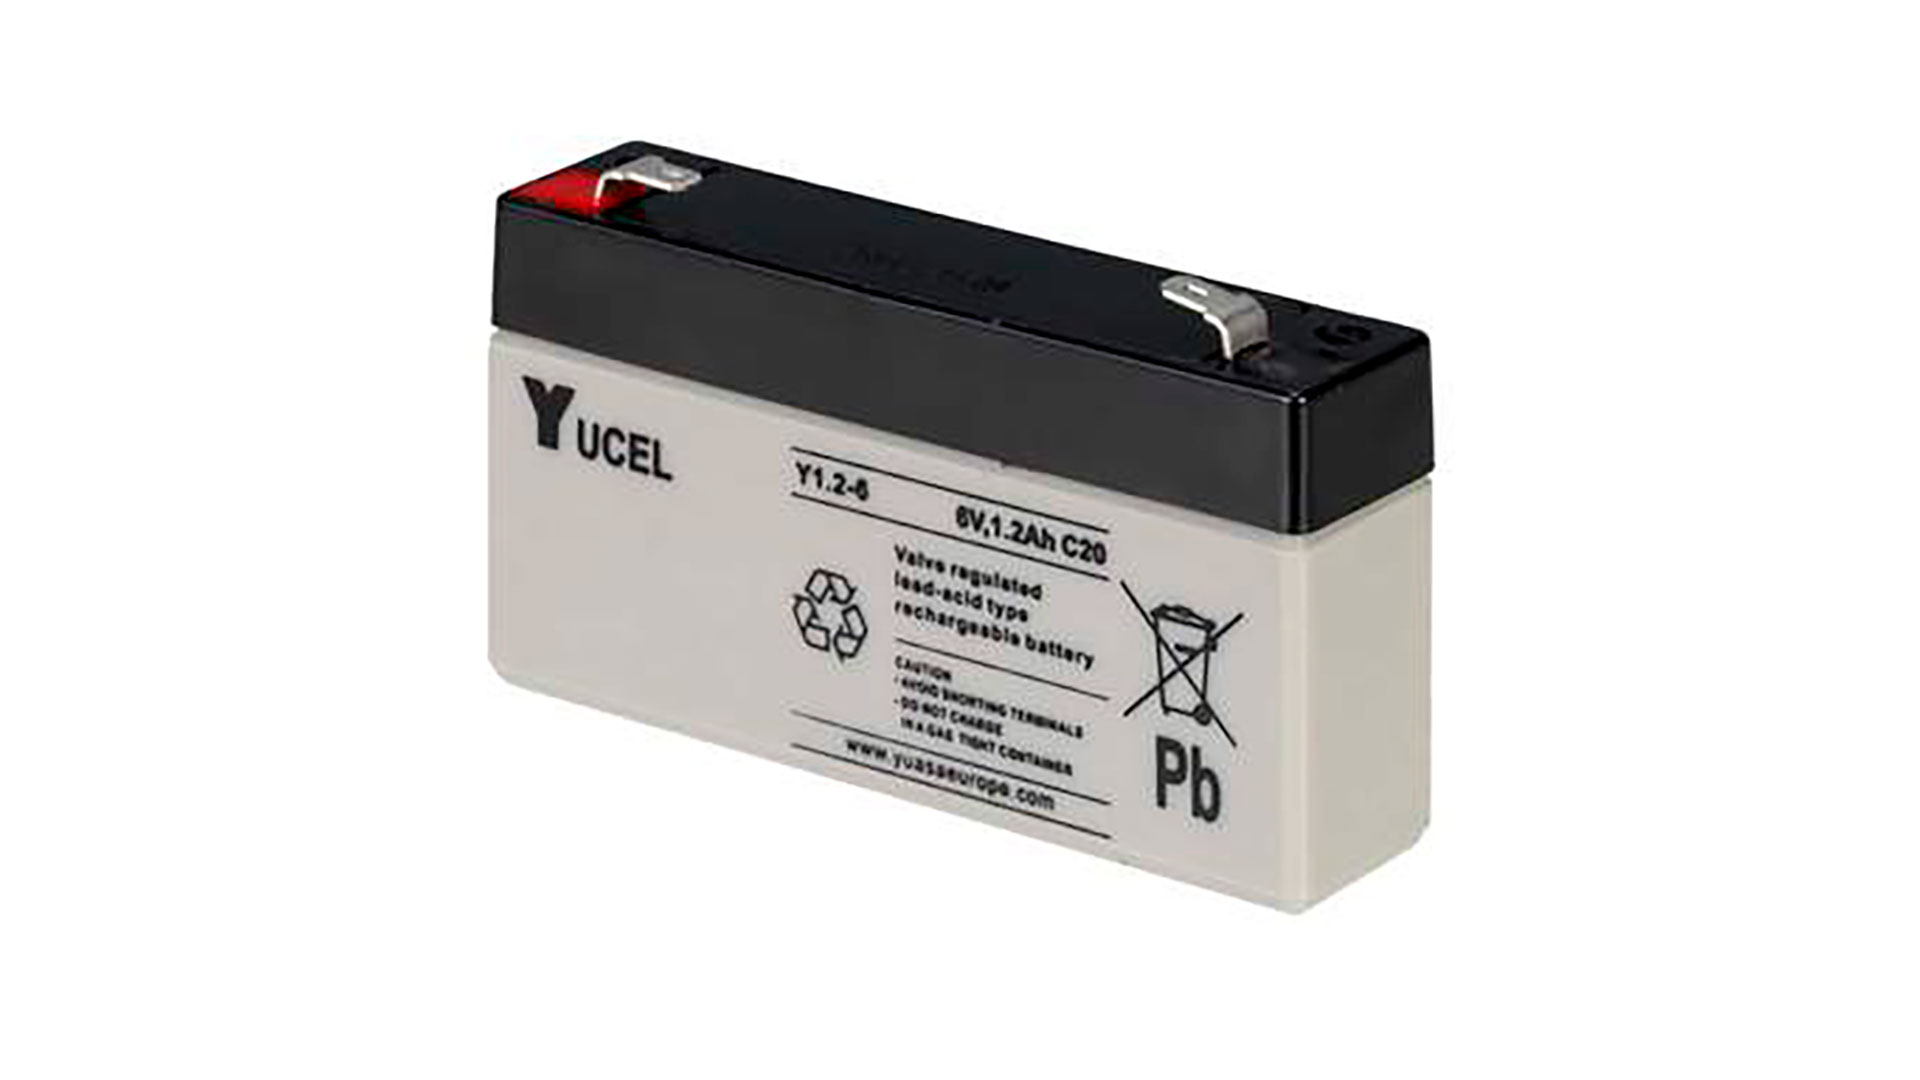  Yuasa 1.2Ah 6V Sealed Lead Acid Yucel Battery 